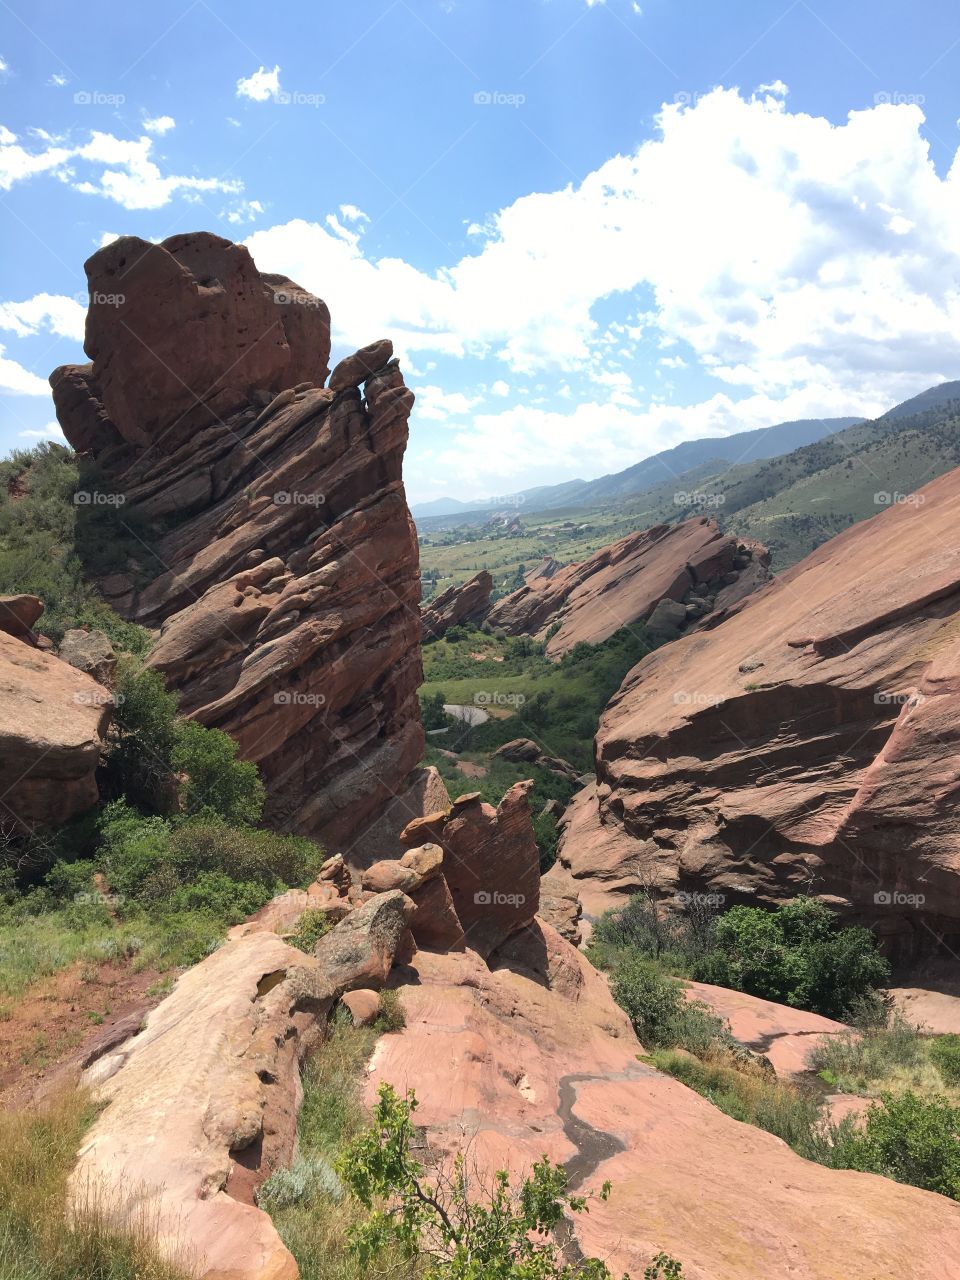 Red Rocks in Colorado 